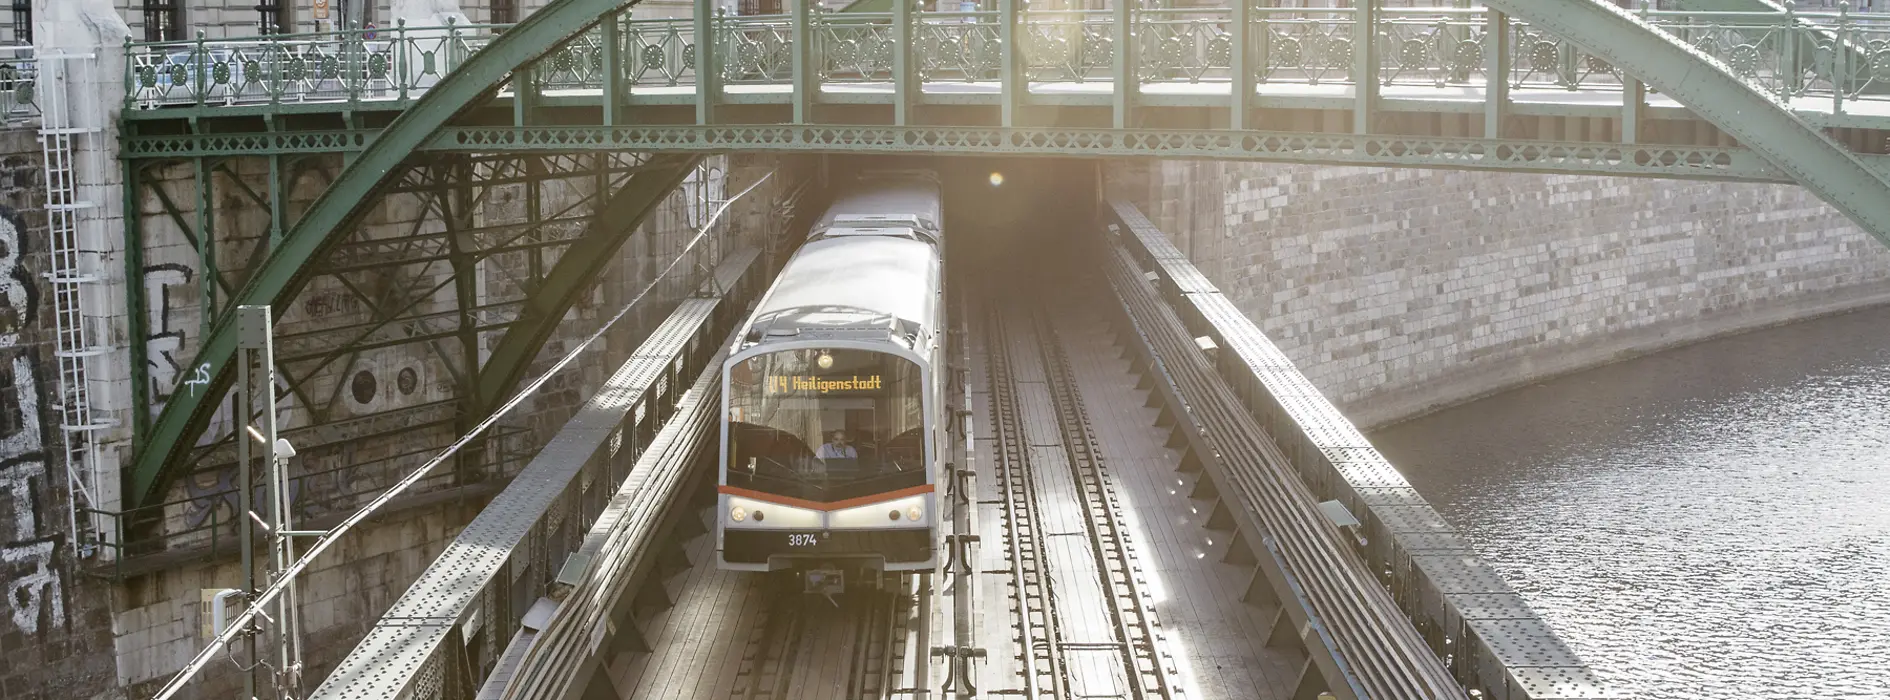 U4-es metró a Wienfluss hídon